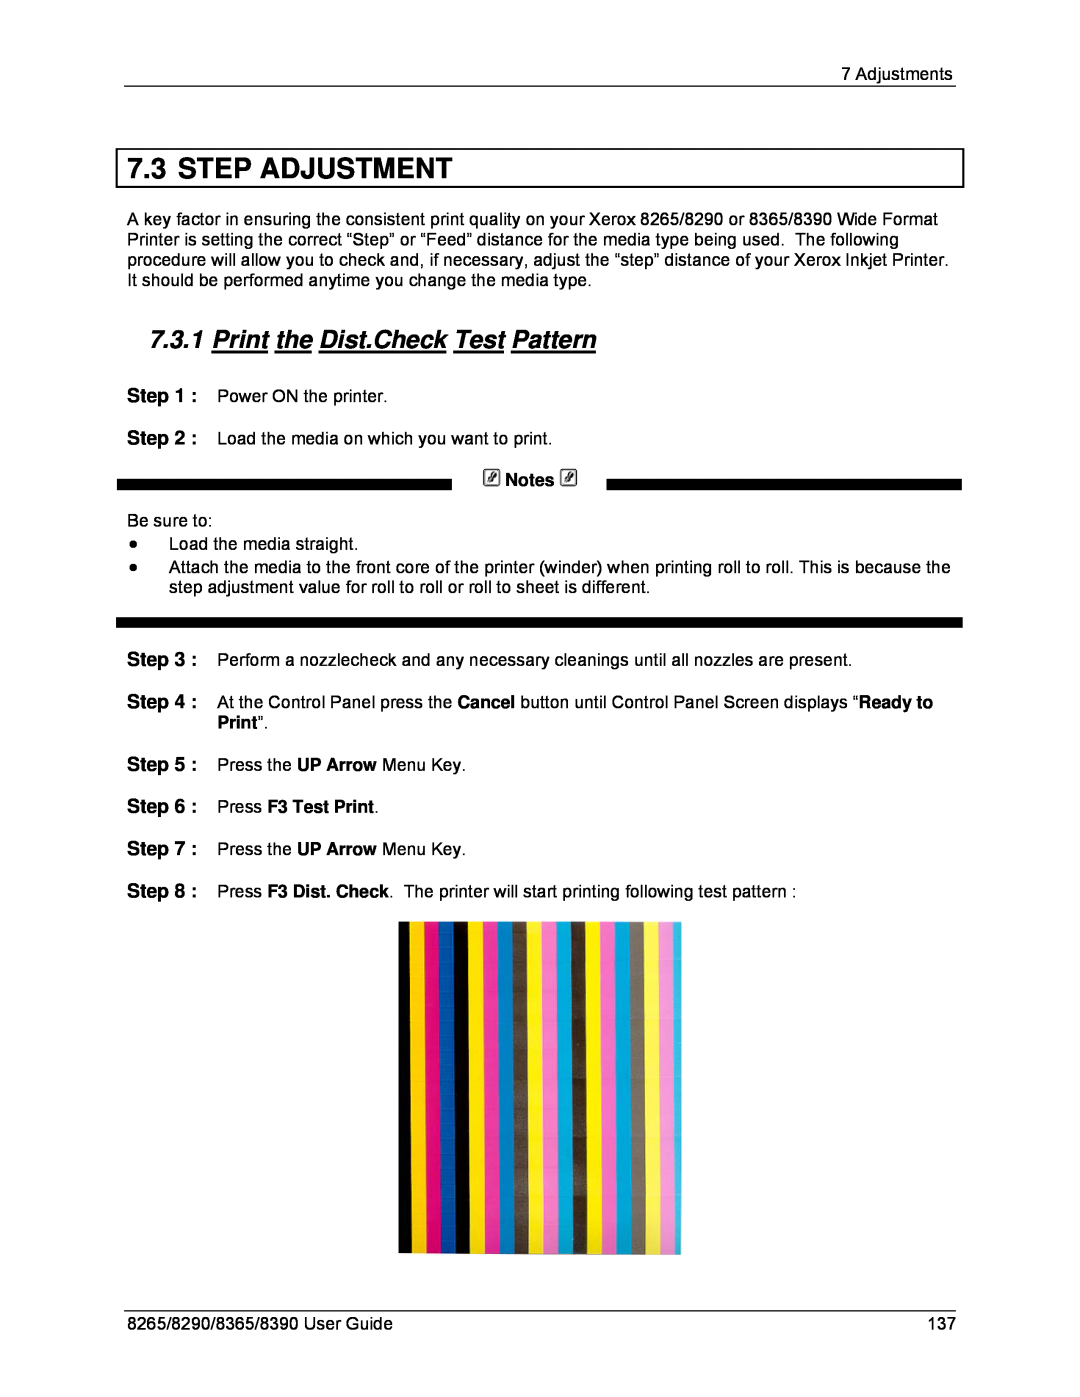 Xerox 8265, 8290, 8390, 8365 manual Step Adjustment, Print the Dist.Check Test Pattern, Press F3 Test Print 